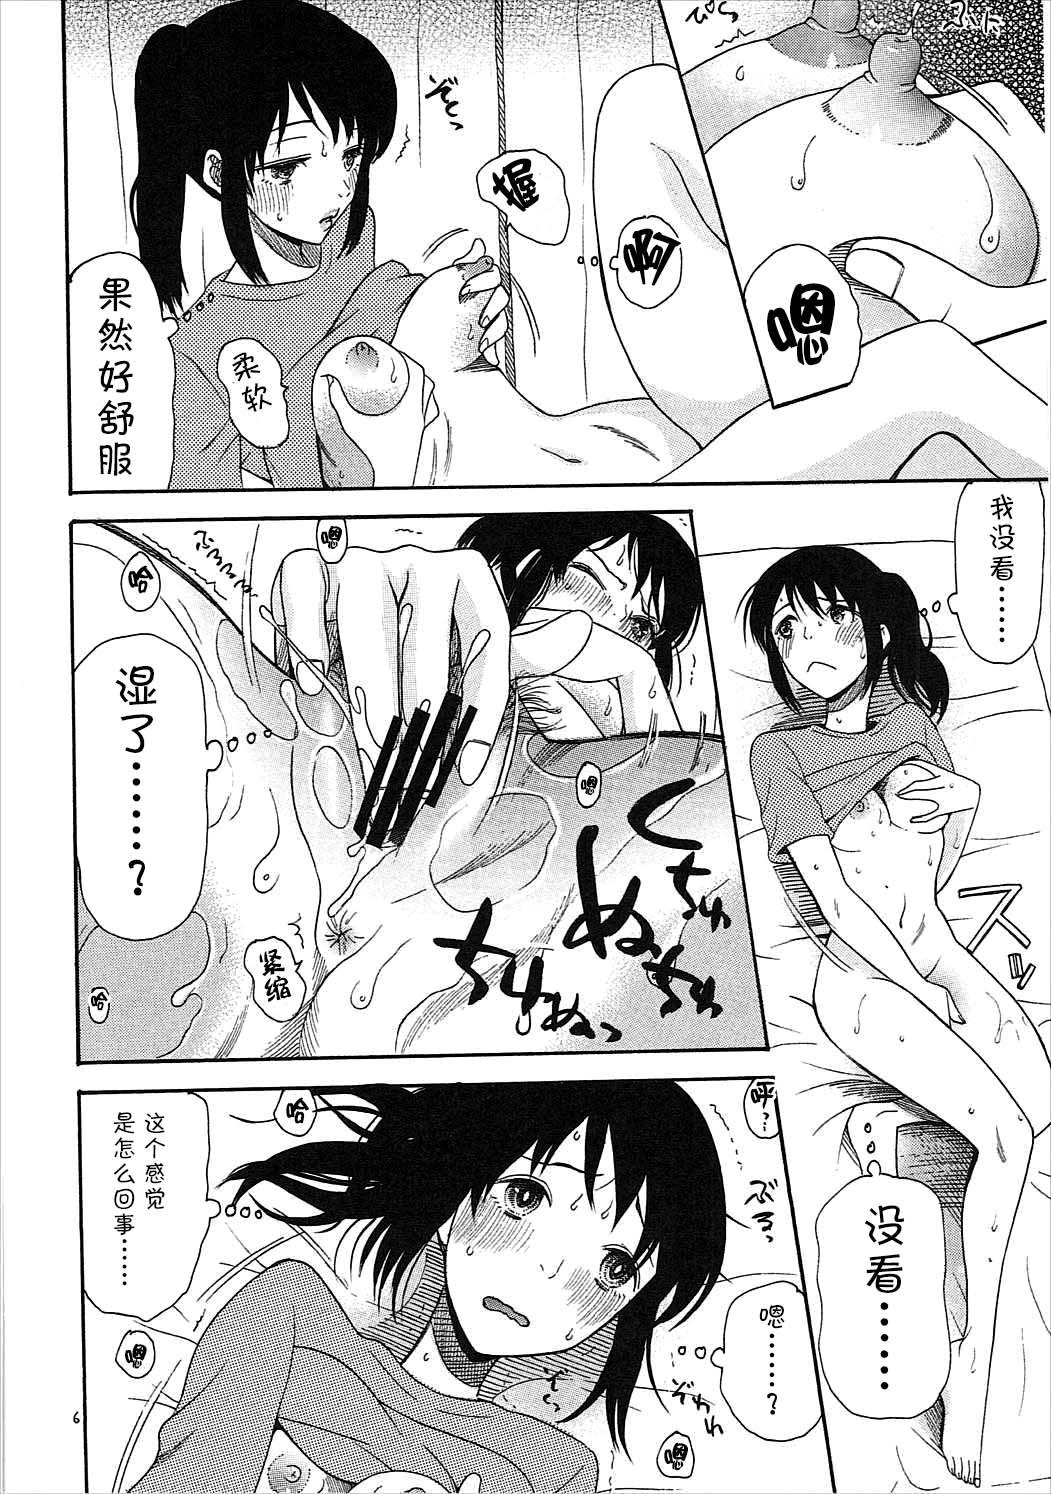 Fingers Futari no Hibi o. - Kimi no na wa. Condom - Page 5